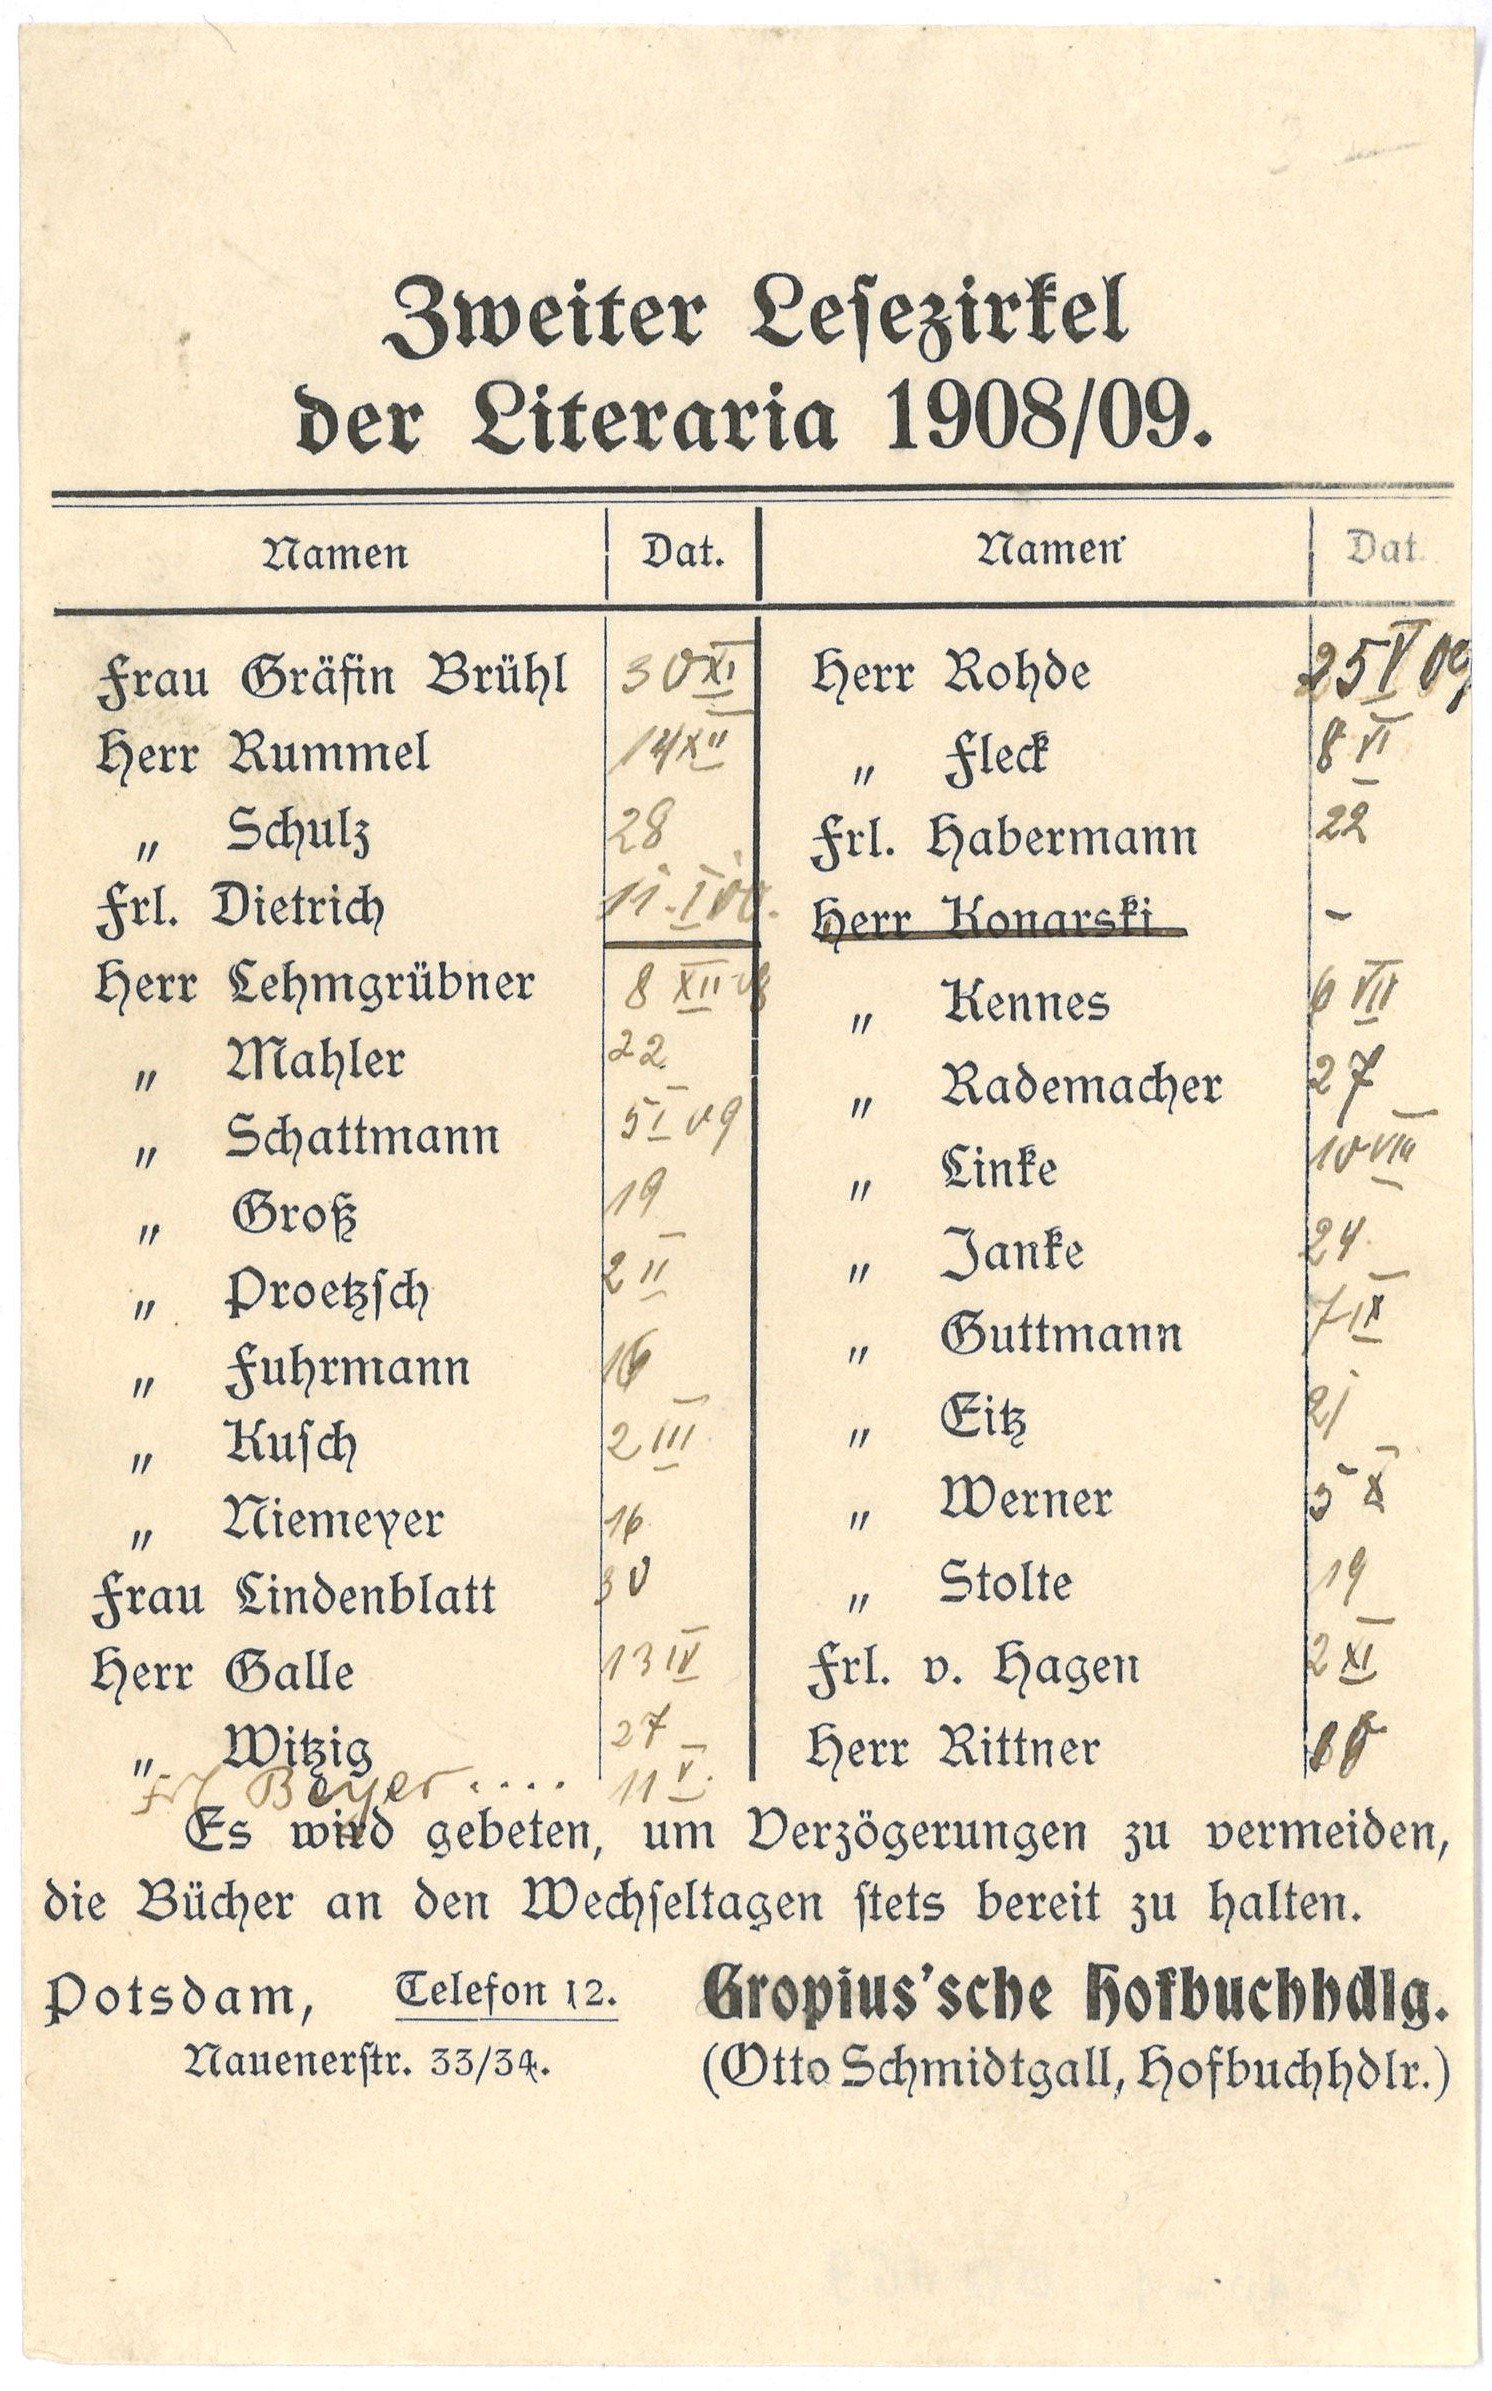 Laufzettel des Zweiten Lesezirkels der "Litteraria" in Potsdam 1908/09 (Landesgeschichtliche Vereinigung für die Mark Brandenburg e.V., Archiv CC BY)